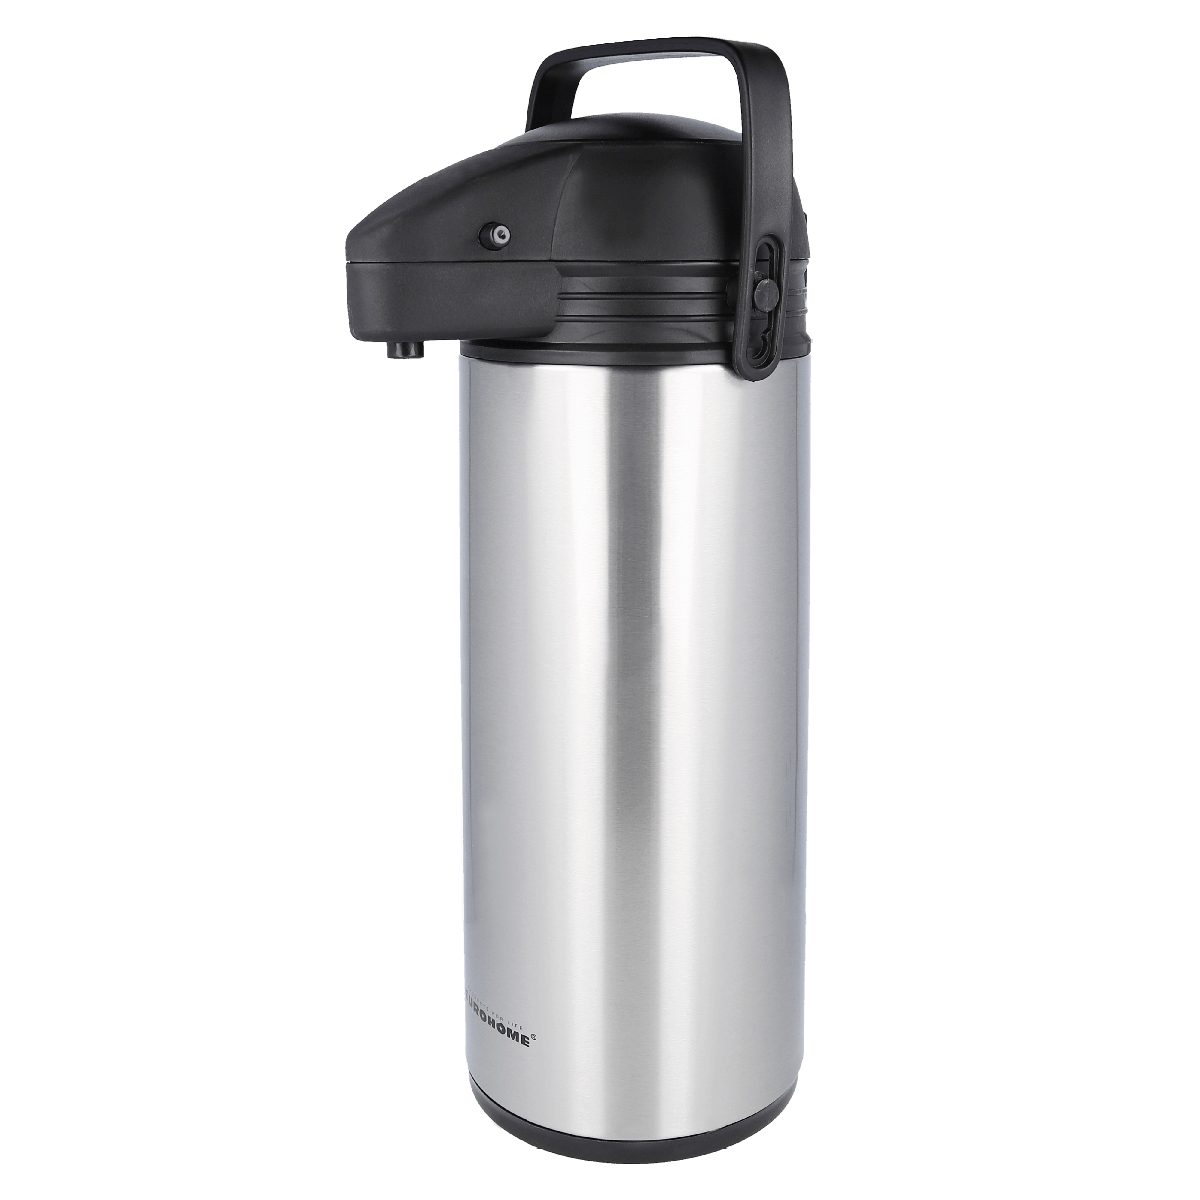 EUROHOME Pump-Isolierkanne Airpot Pumpkanne Edelstahl für 1,9 Liter mit  Tragegriff, 1,9 l, (Thermoskanne 35 cm hoch), Isolierkanne mit Pumpfunktion  - Pumpkannen